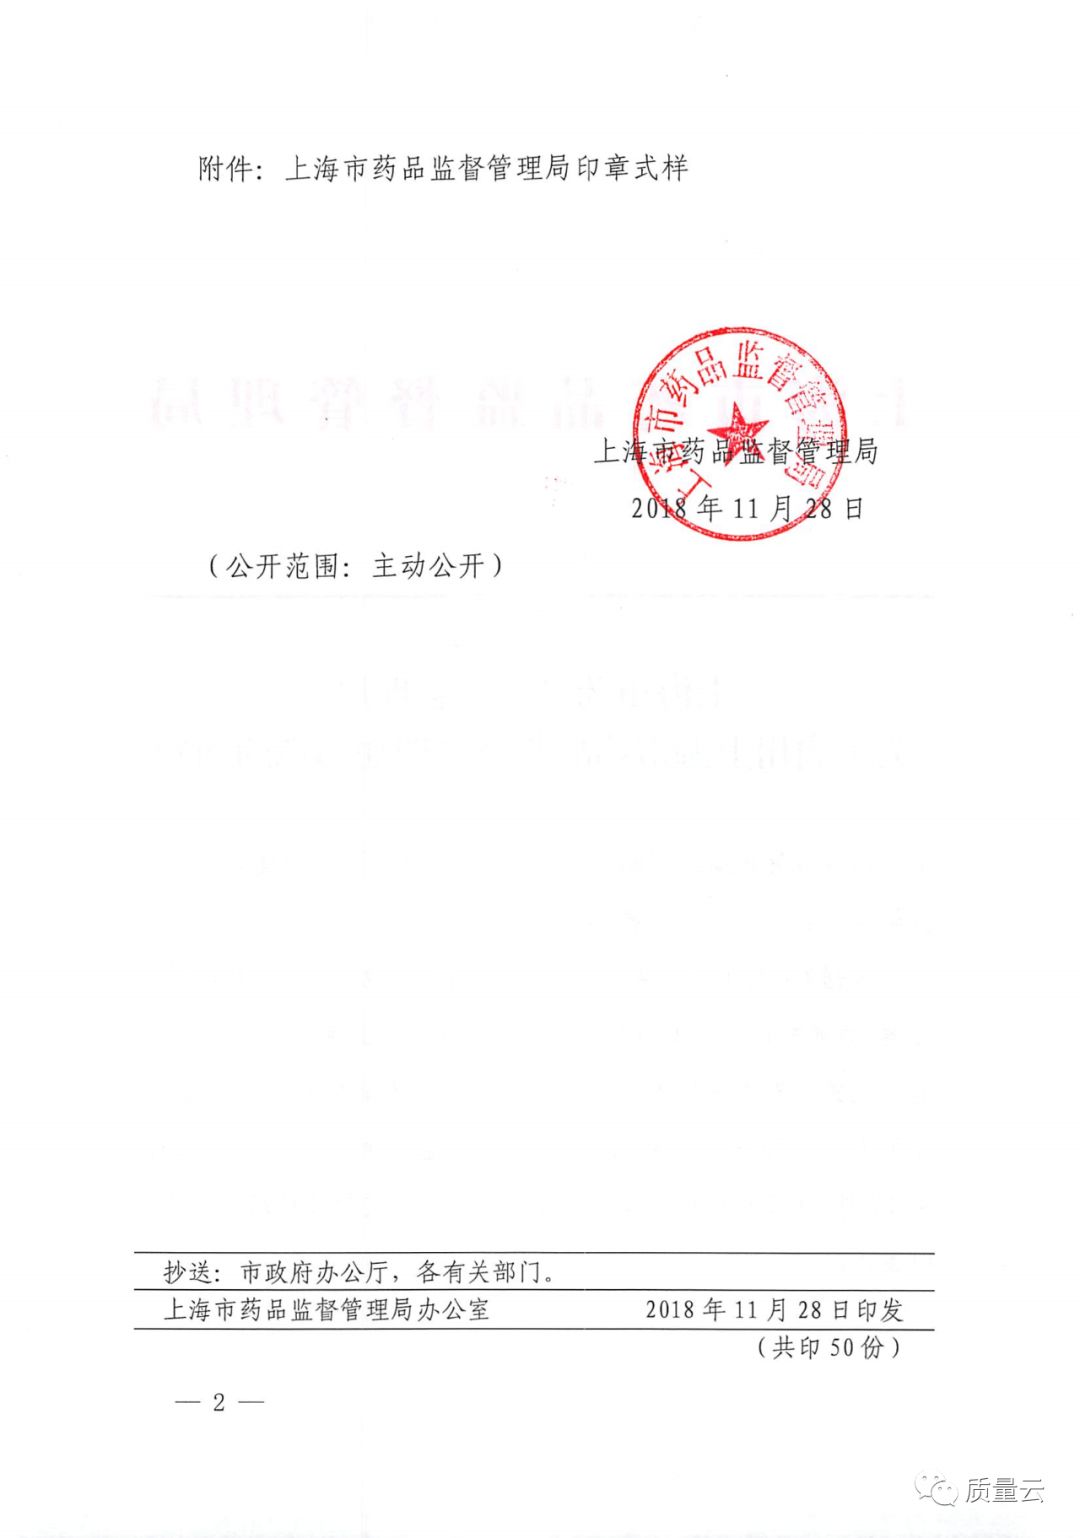 上海市药品监督管理局印章已启用更多信息点开看